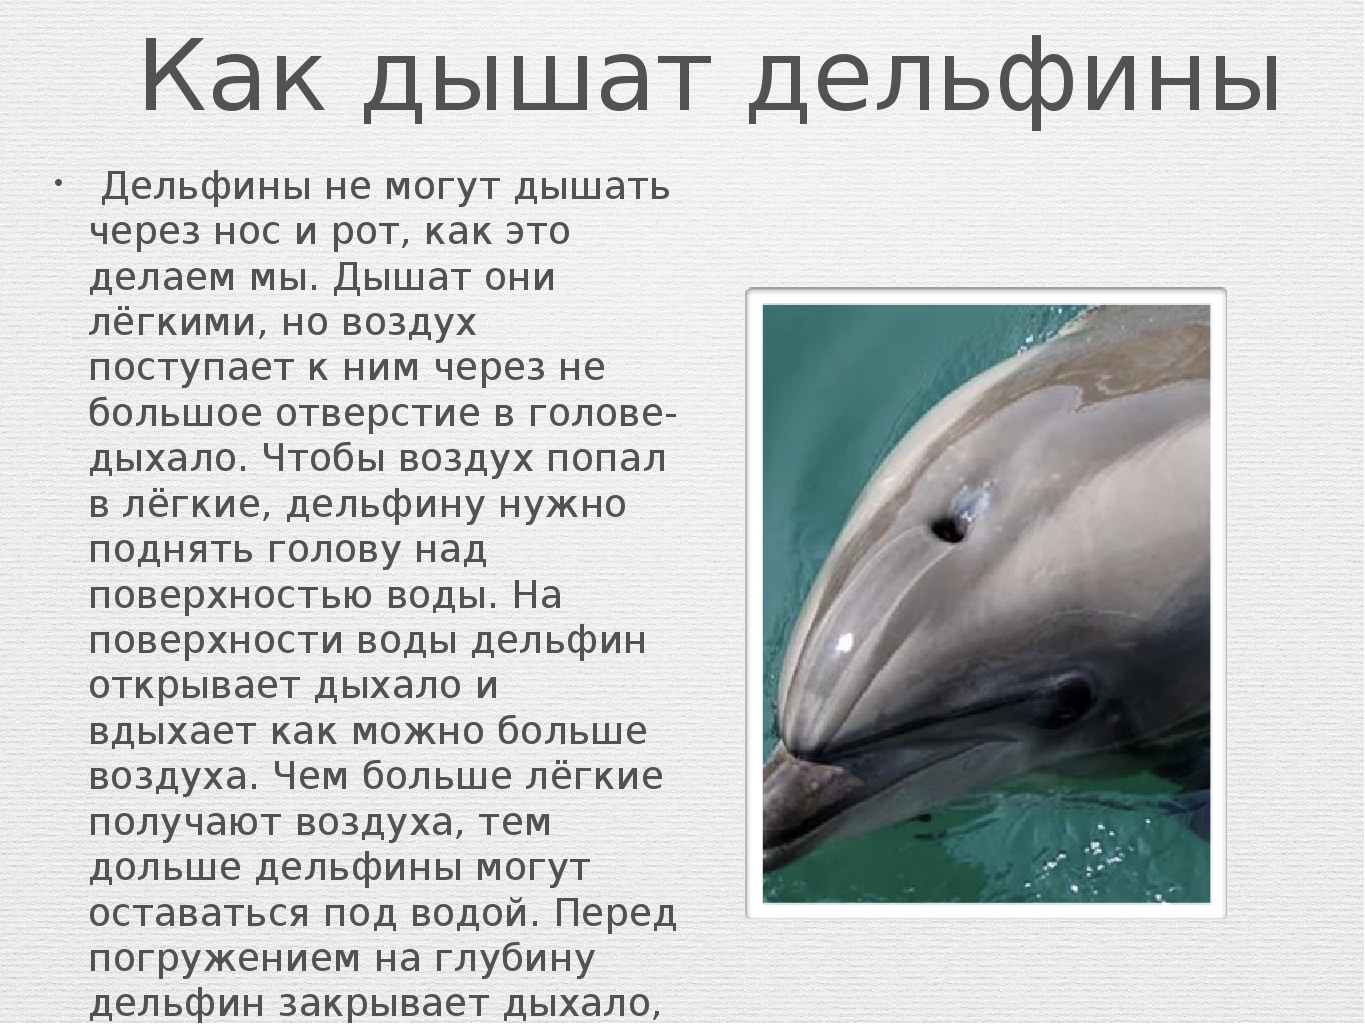 Дельфины дышат